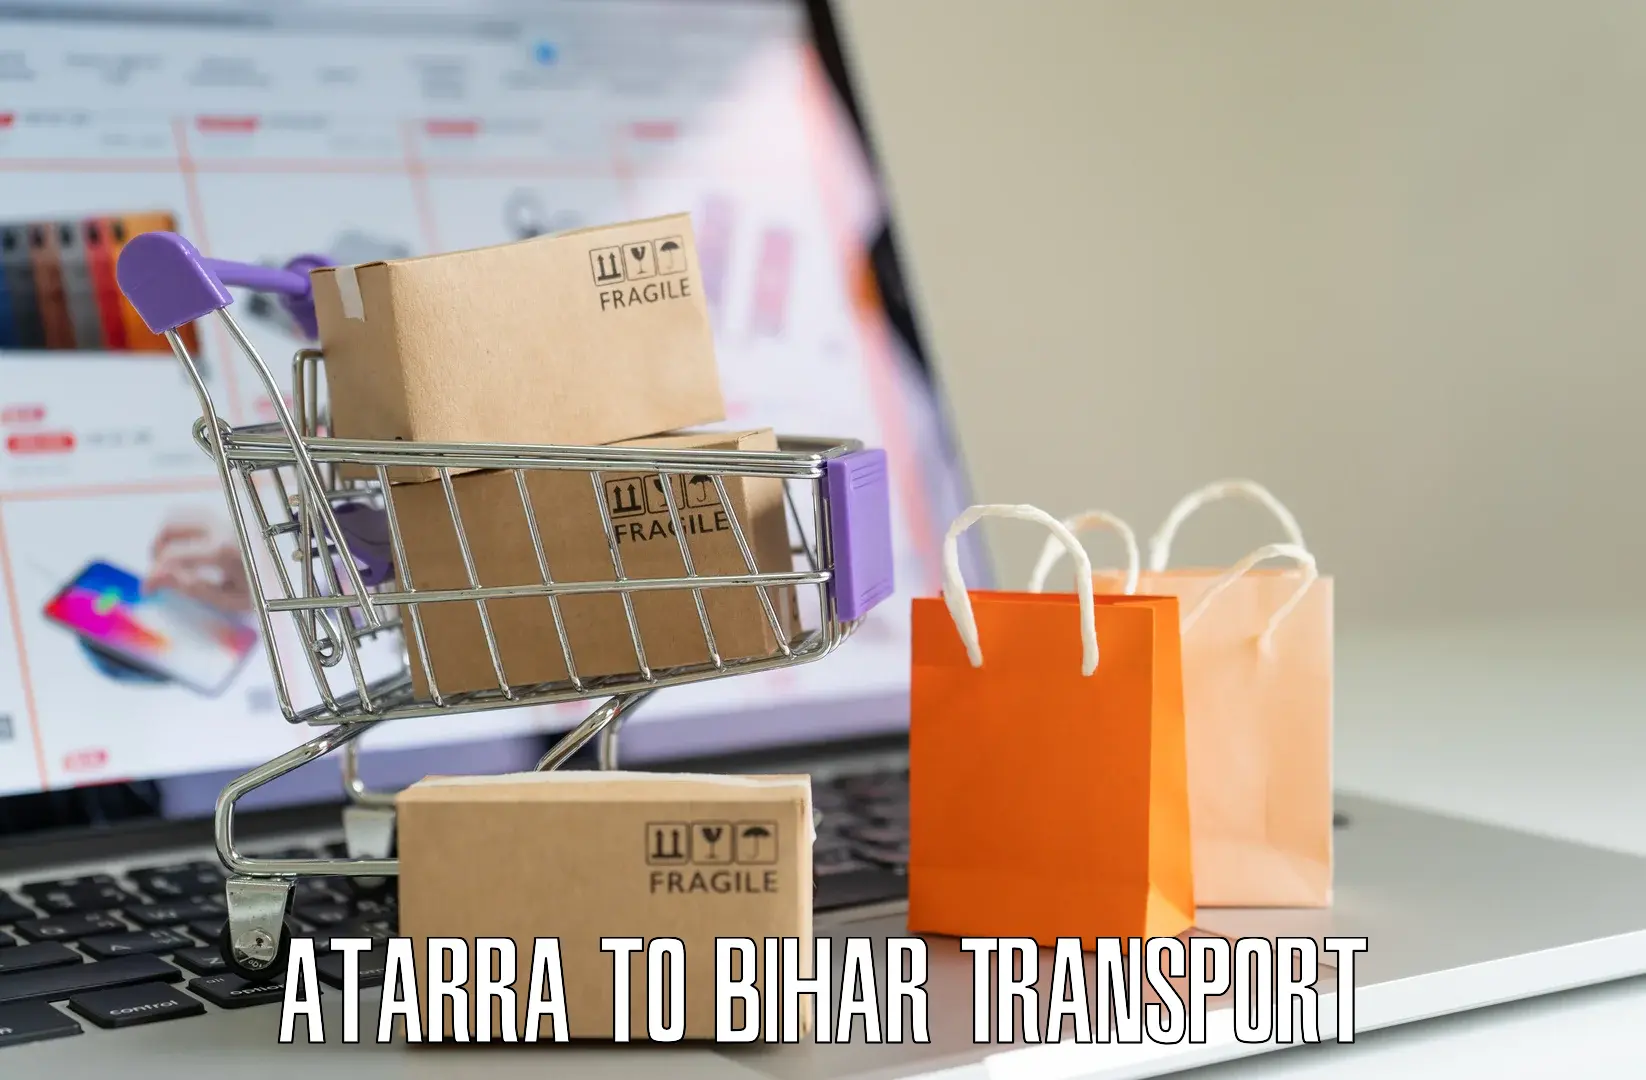 Vehicle transport services Atarra to IIIT Bhagalpur